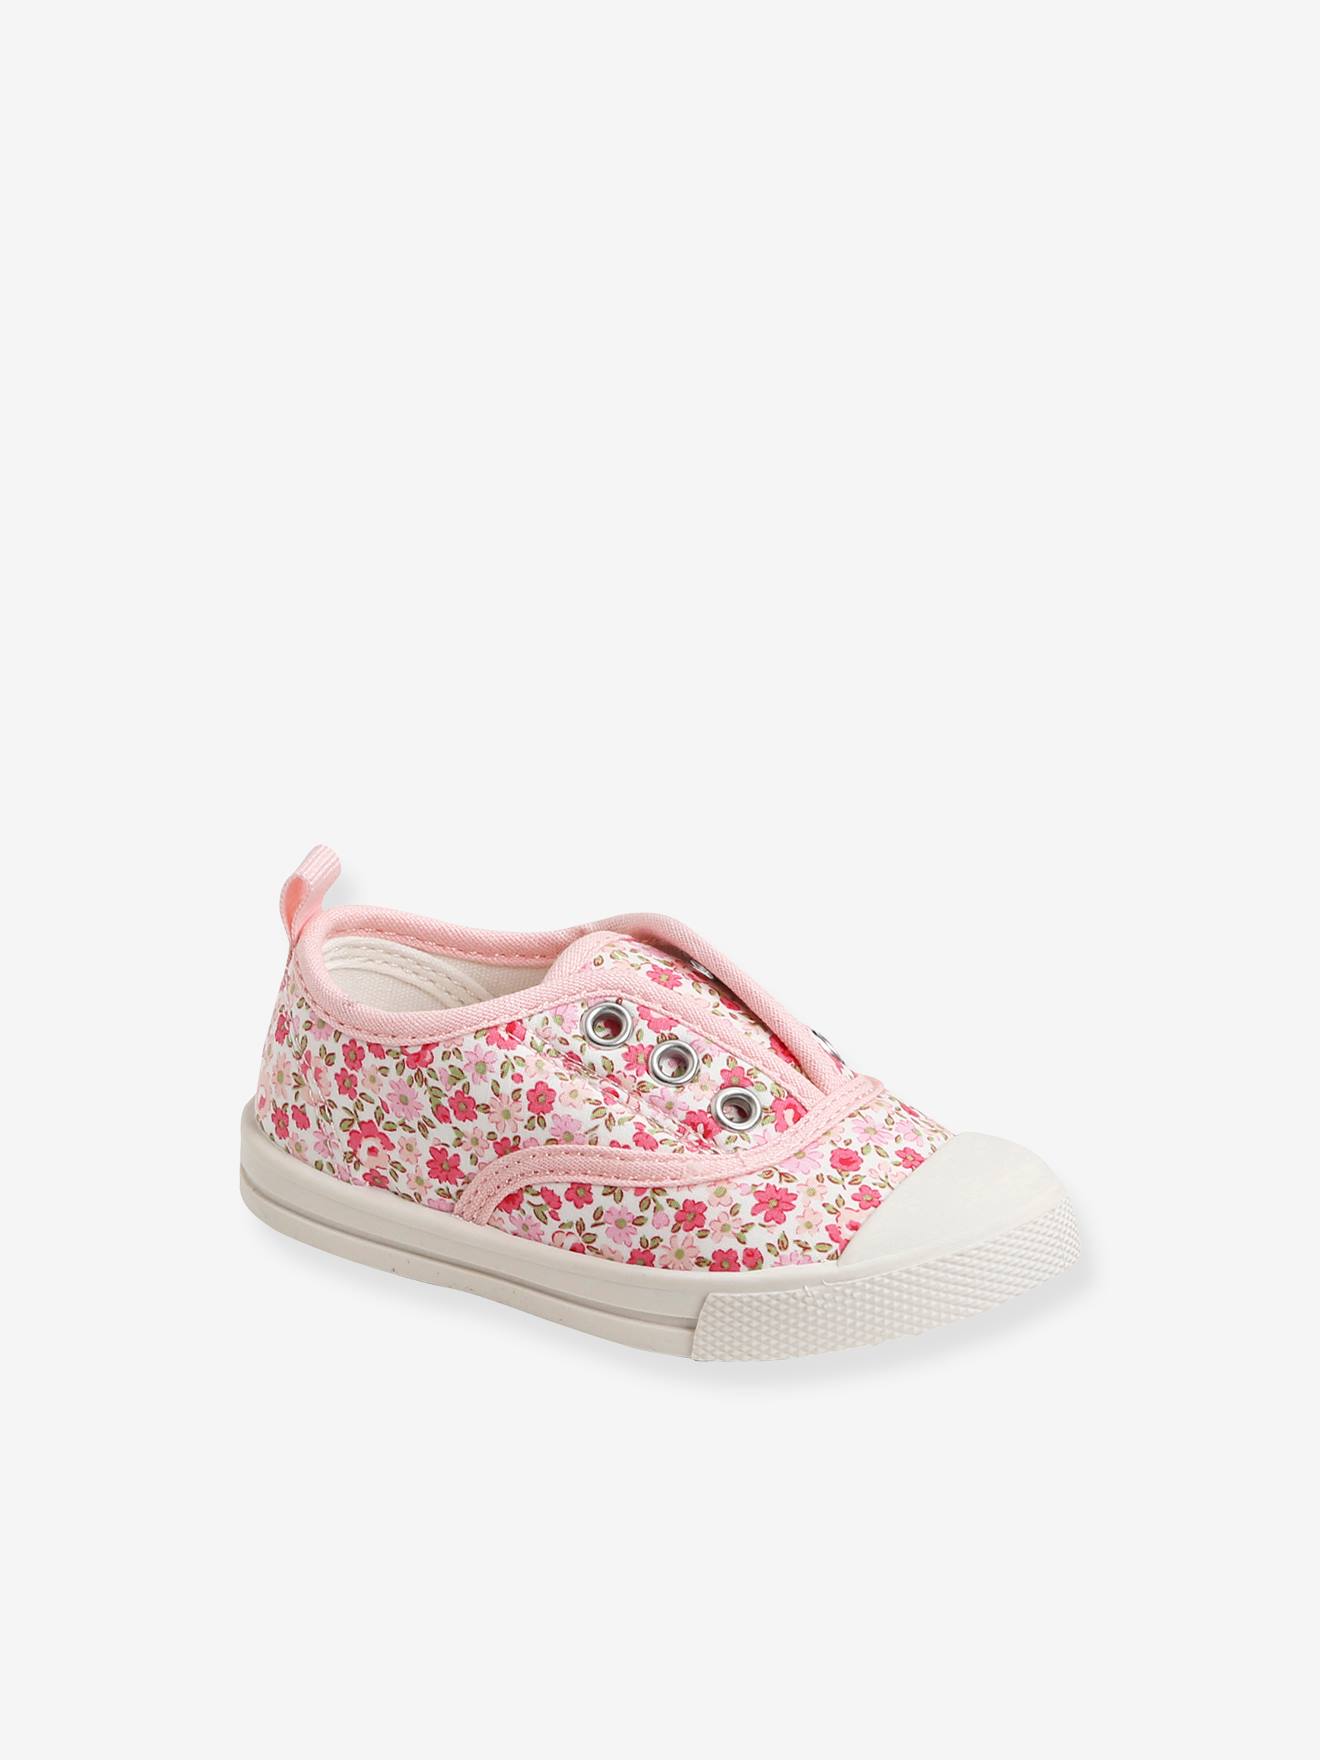 Baby Schuhe Kinder Schuhe  Mädchen Schuhe weiß/rosa bestickt 3-4 Monate 